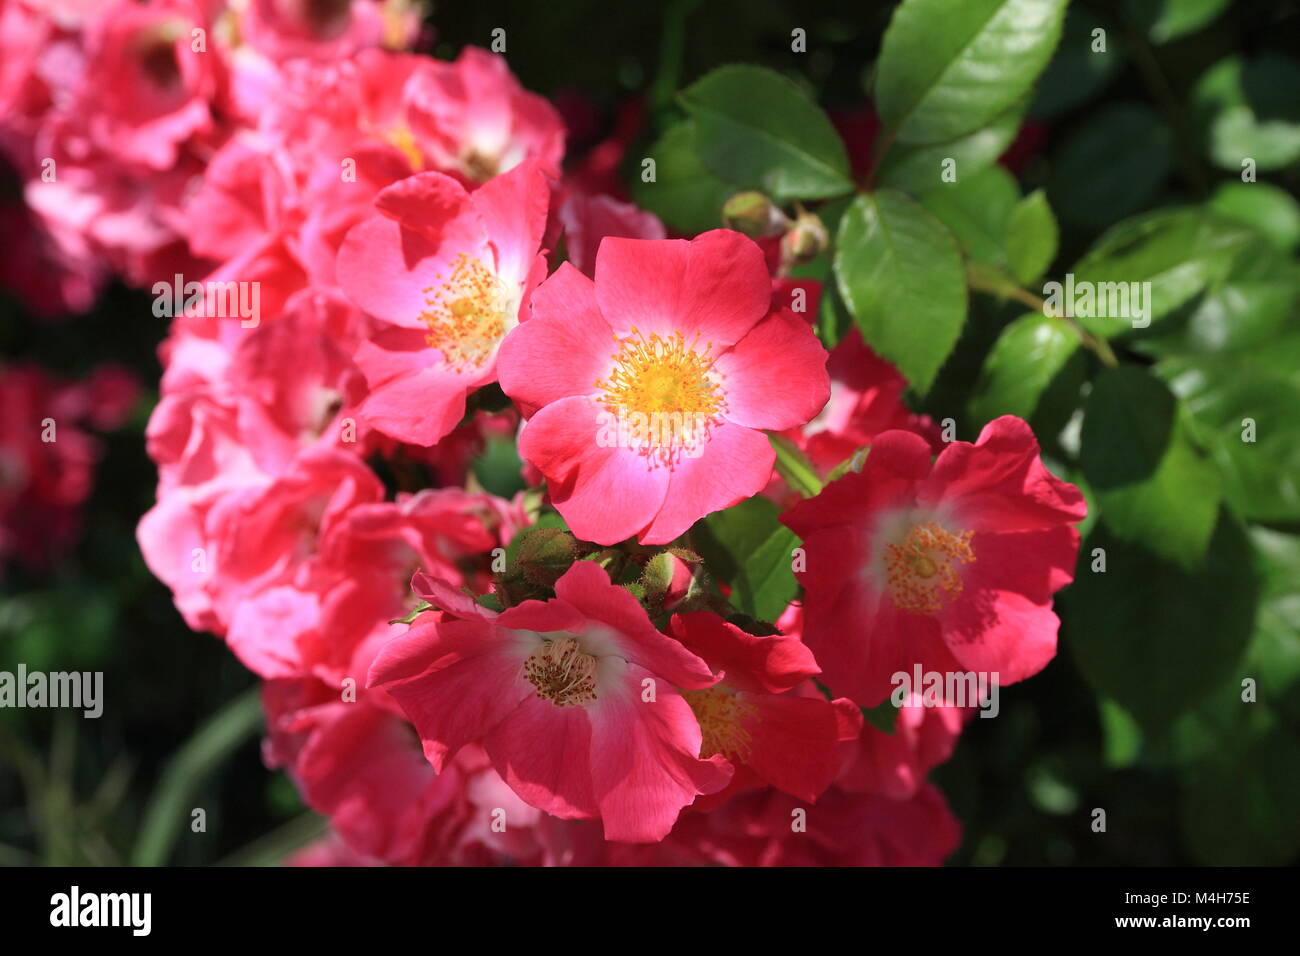 Rose selvatiche immagini e fotografie stock ad alta risoluzione - Alamy